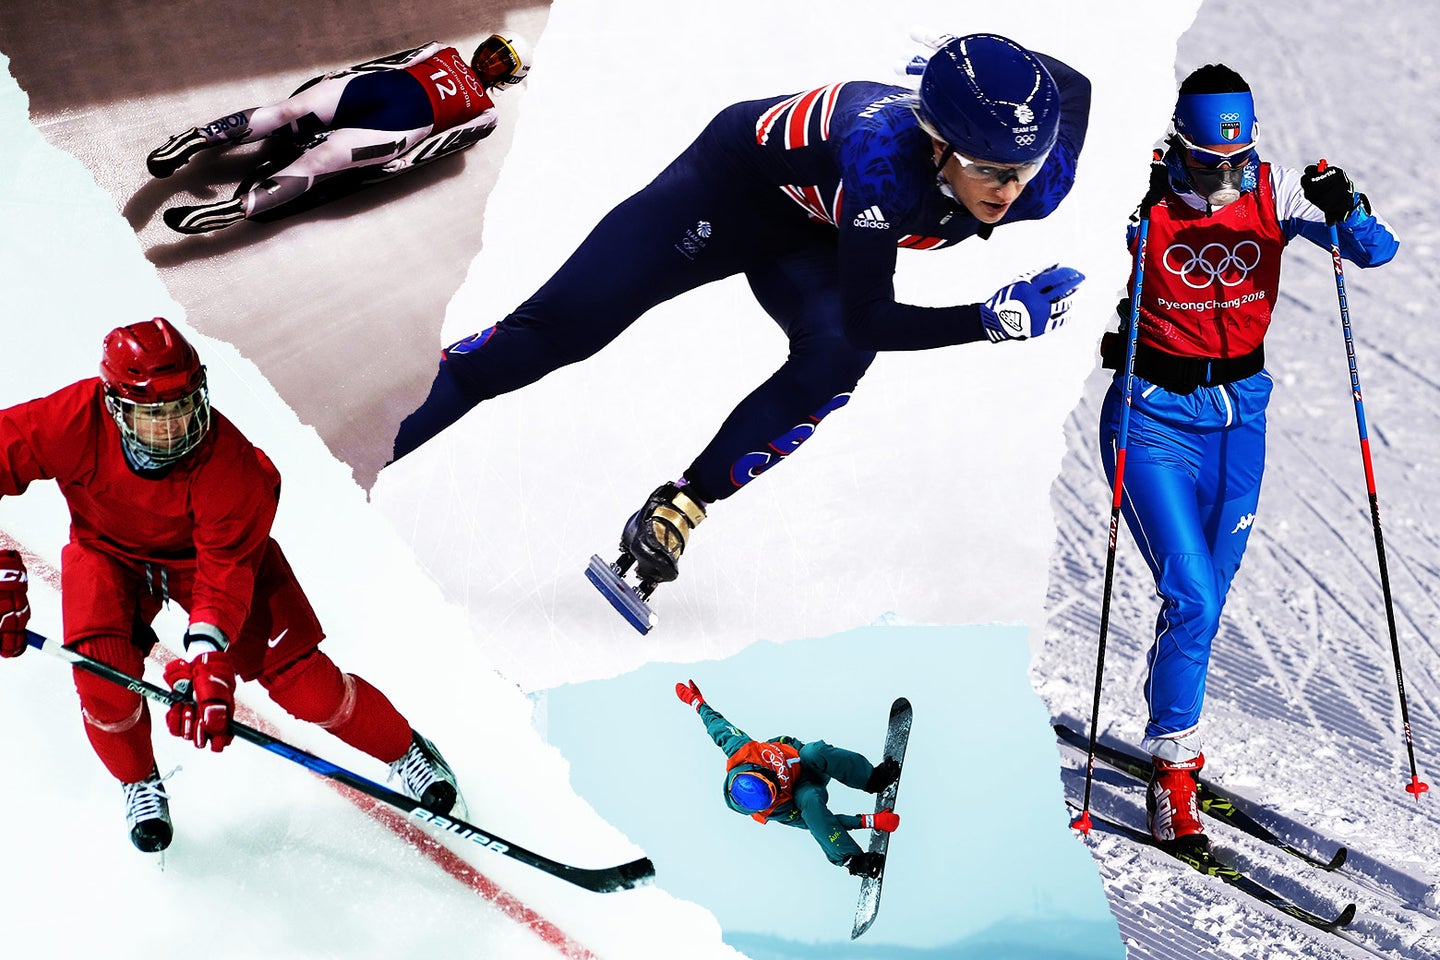 ONR AZA Winter Olympics image